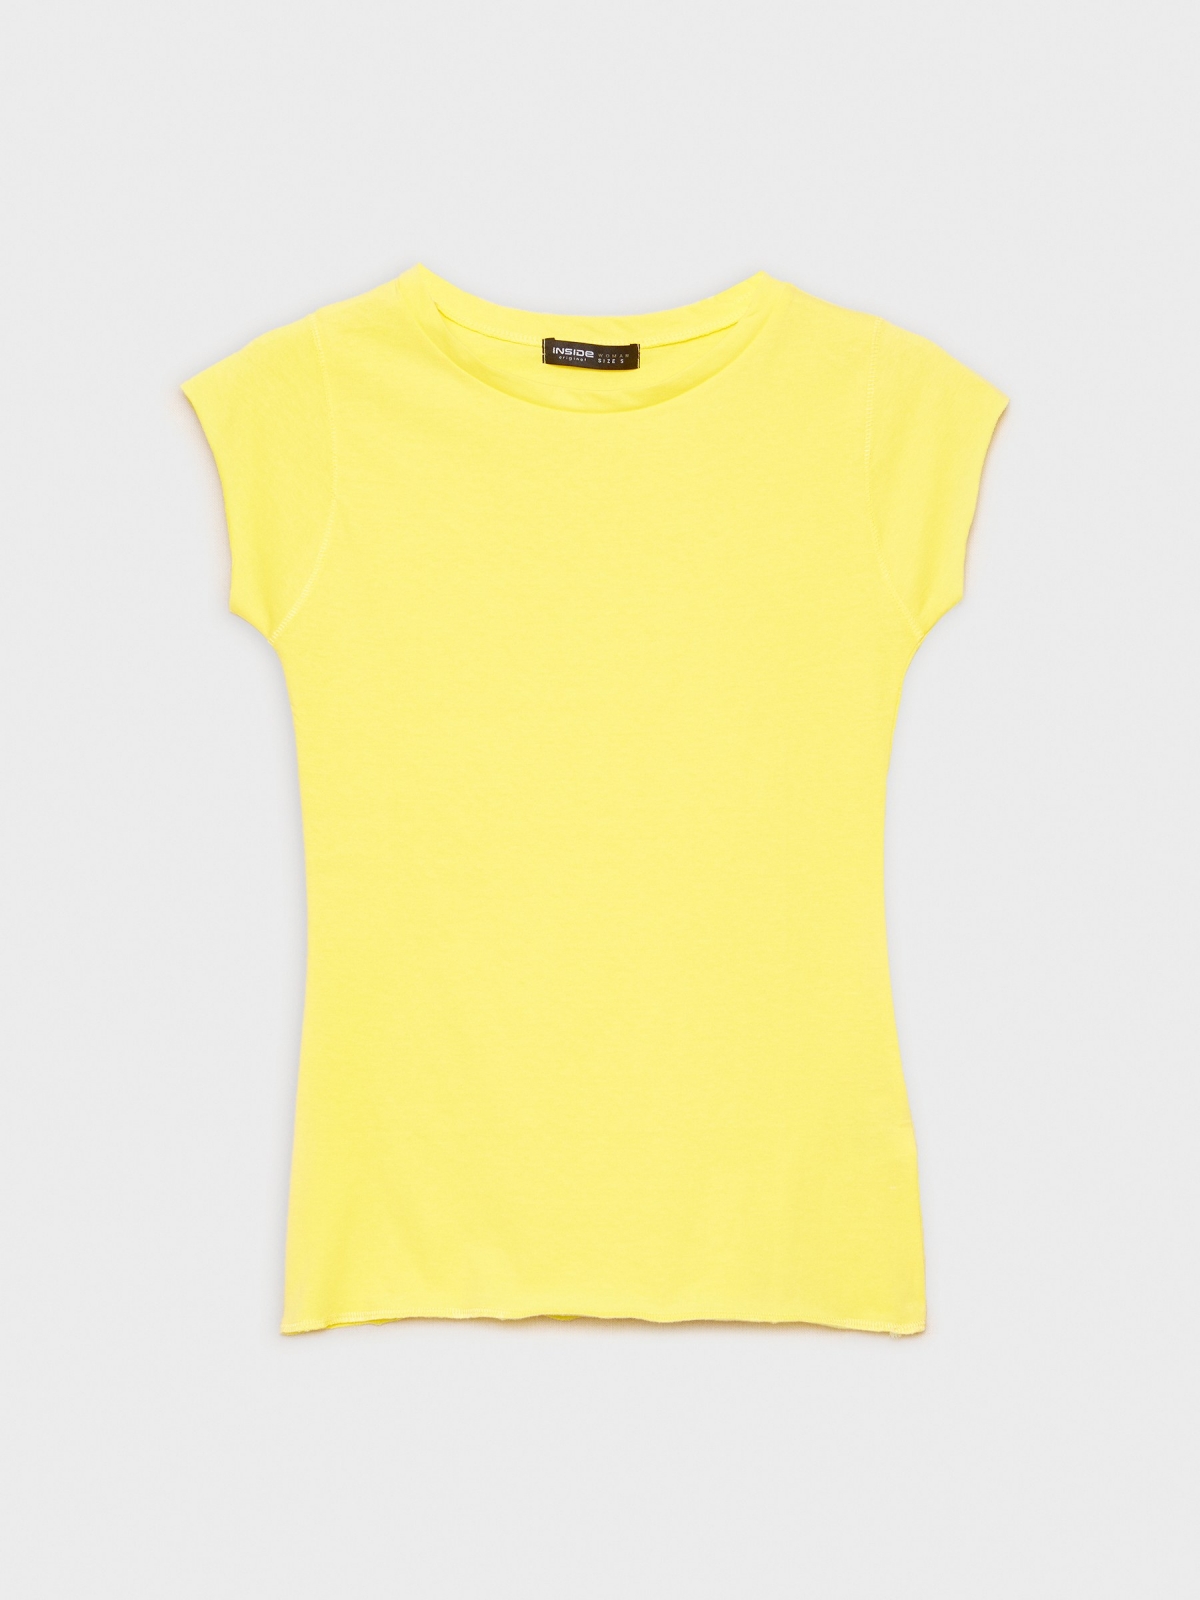  Camiseta básica cuello redondo amarillo